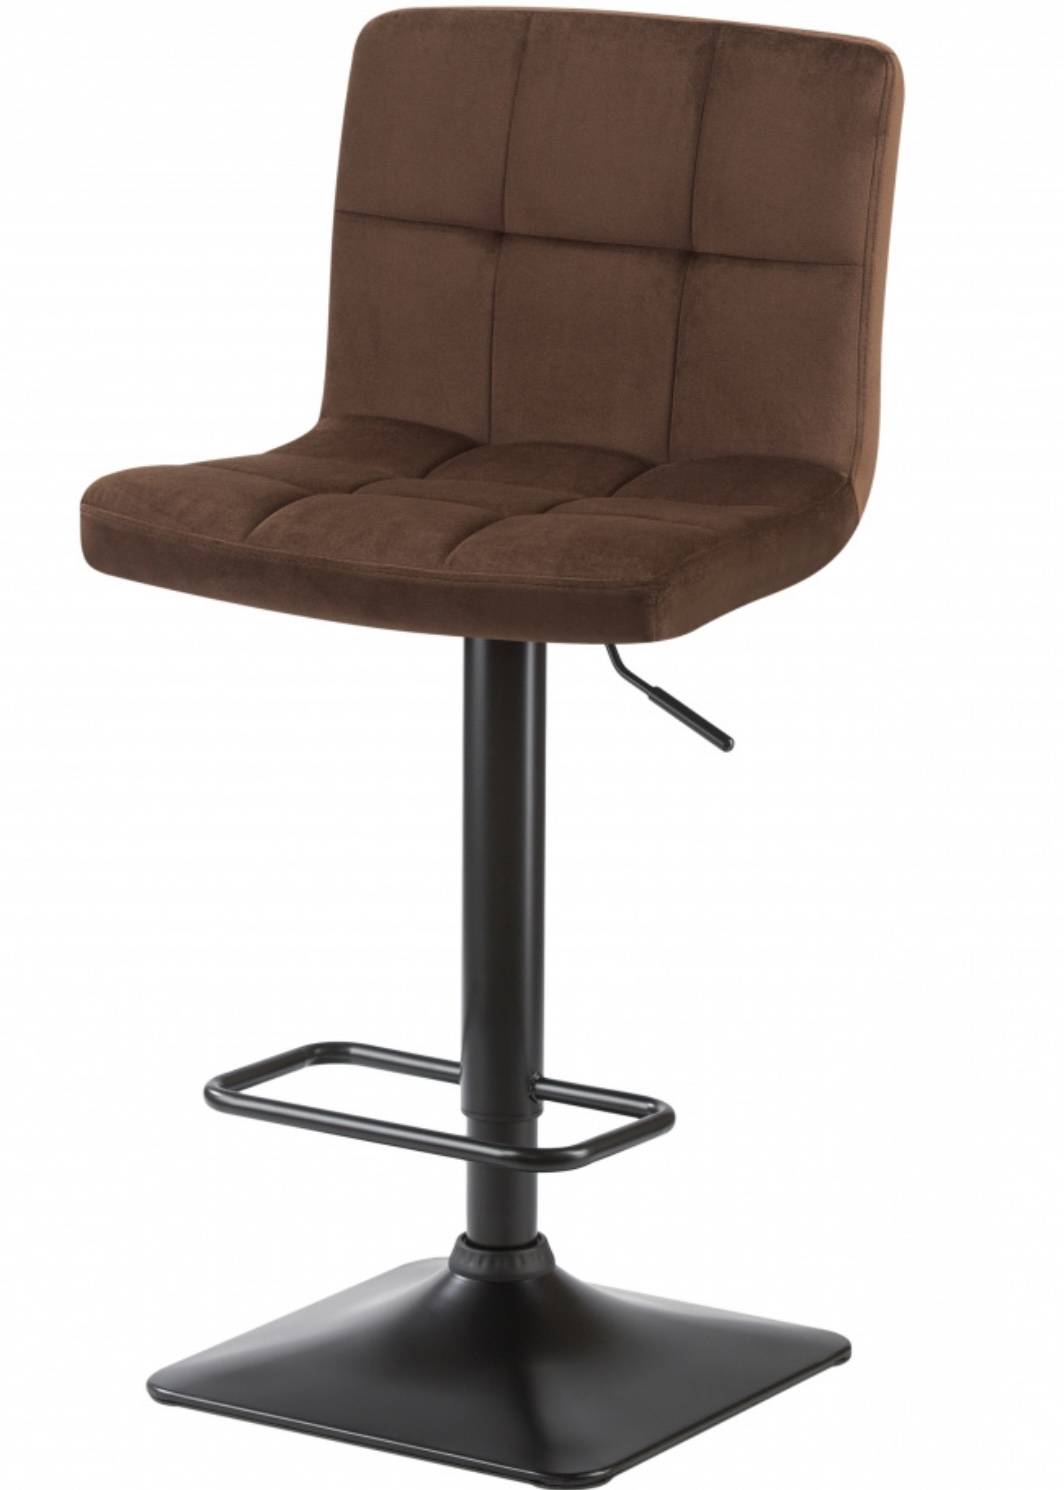 Купить коричневый стул Dominic в romanta.ru